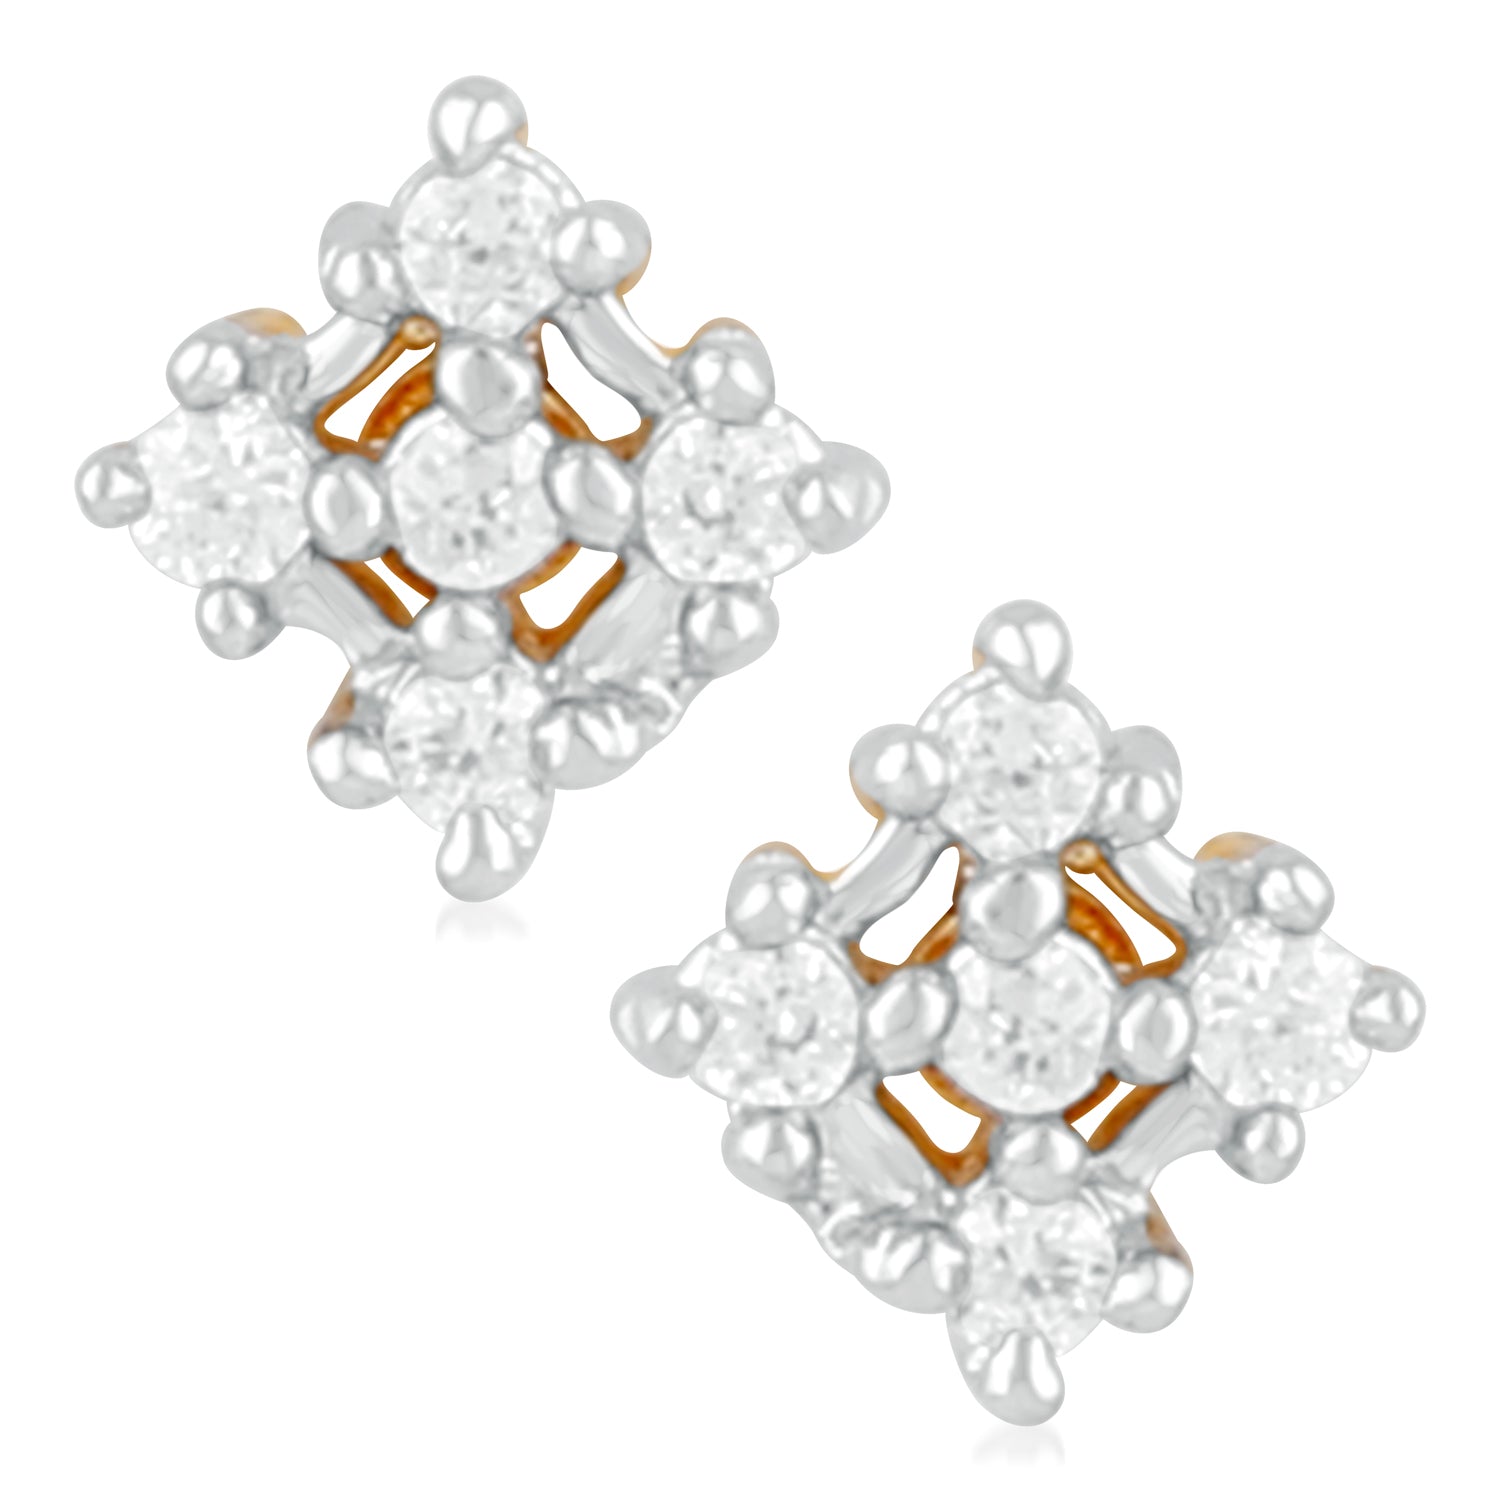 Elegant Cubic Zirconia Stud Earrings